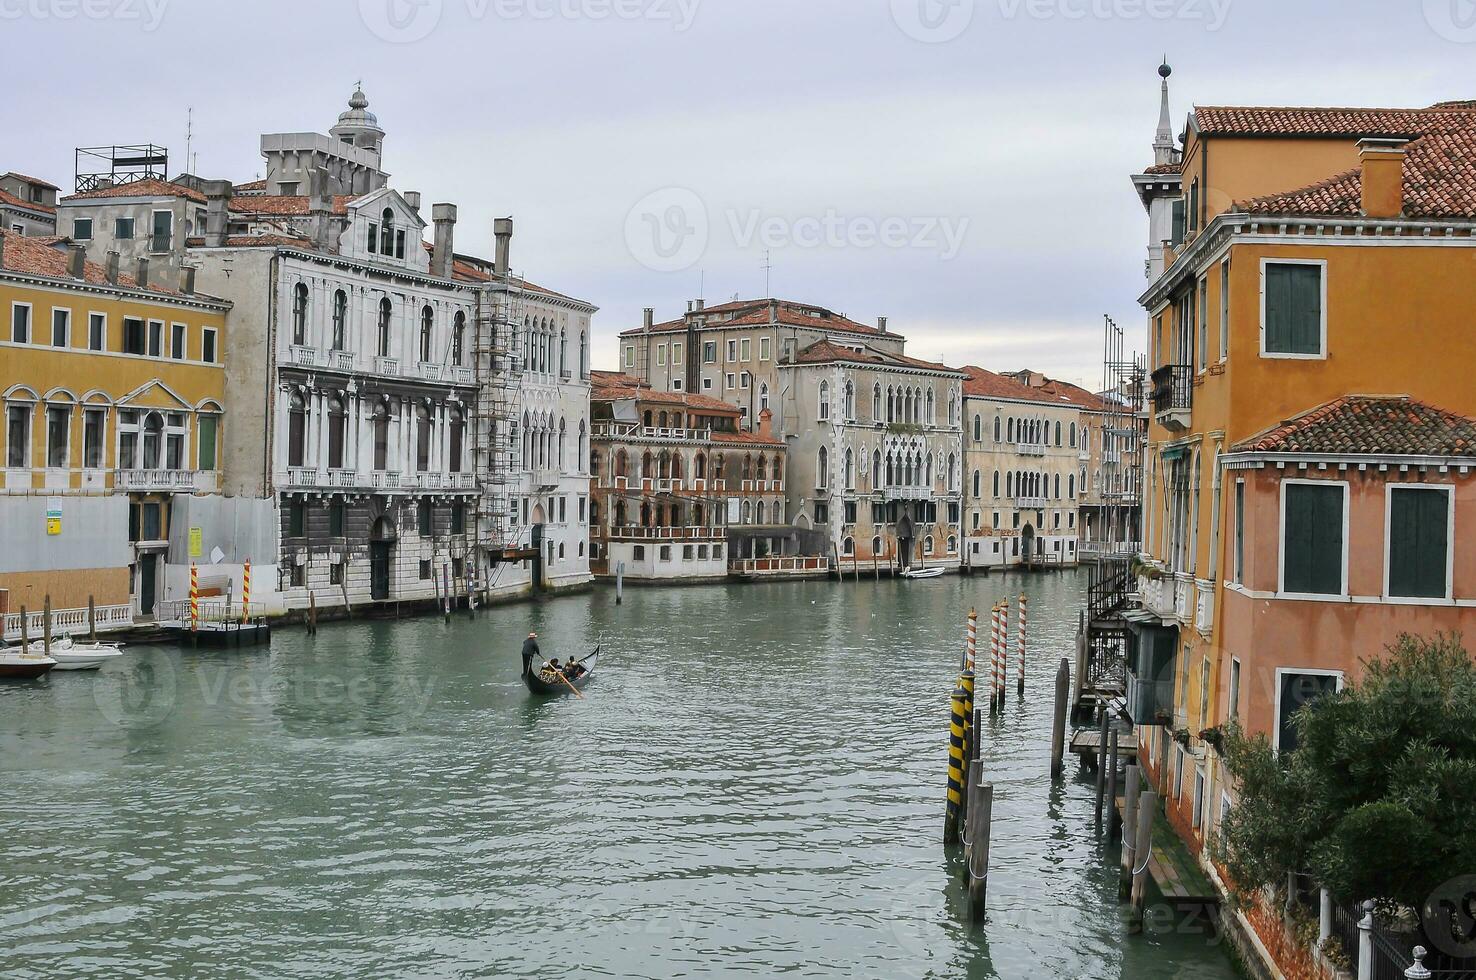 idilliaco paesaggio nel Venezia, Italia foto